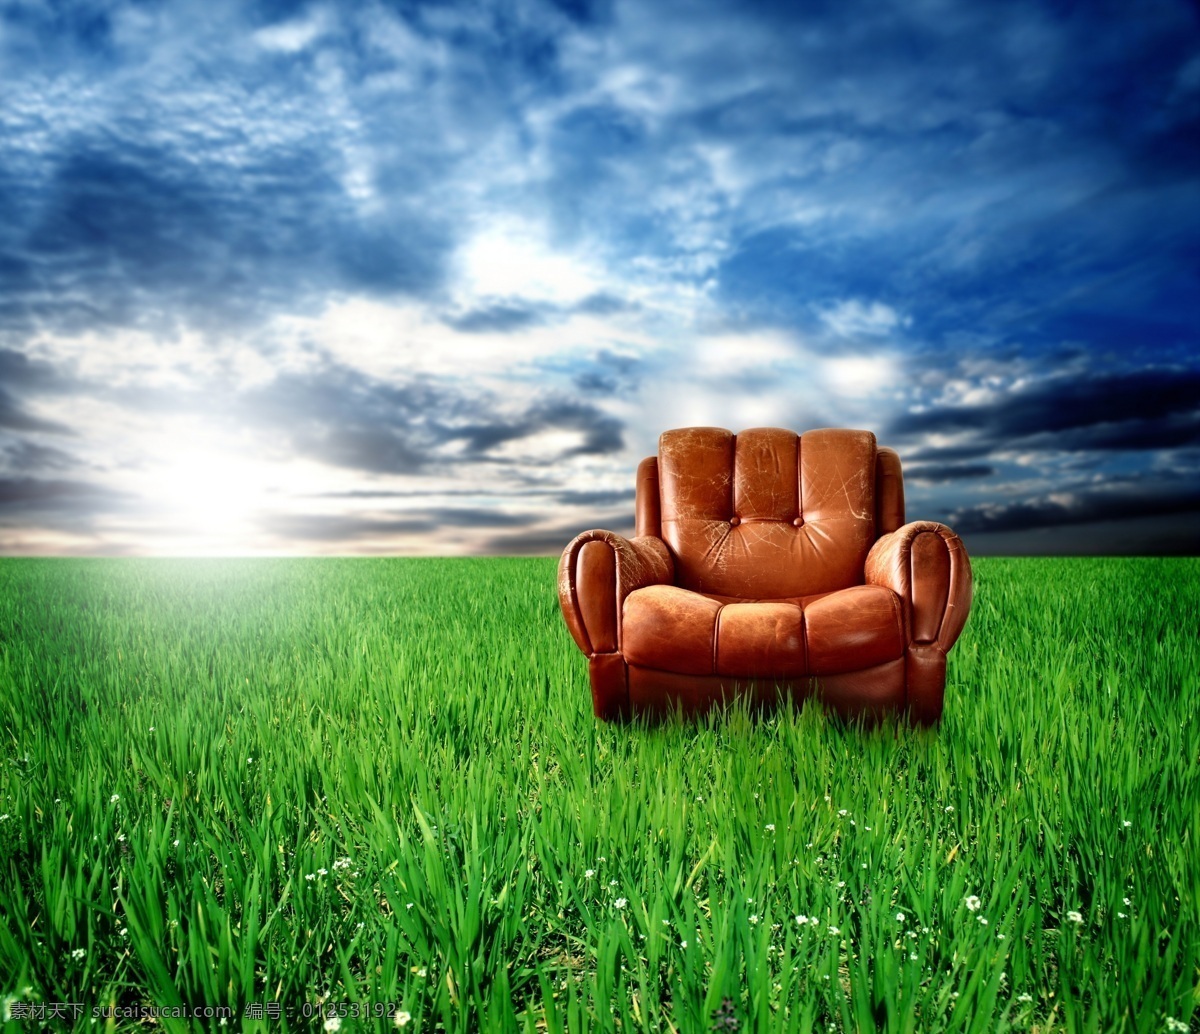 草地 上 欧式 椅子 欧式椅子 高清图片 jpg图库 摄影图片 沙发椅 草地上的椅子 天空 家具电器 生活百科 绿色